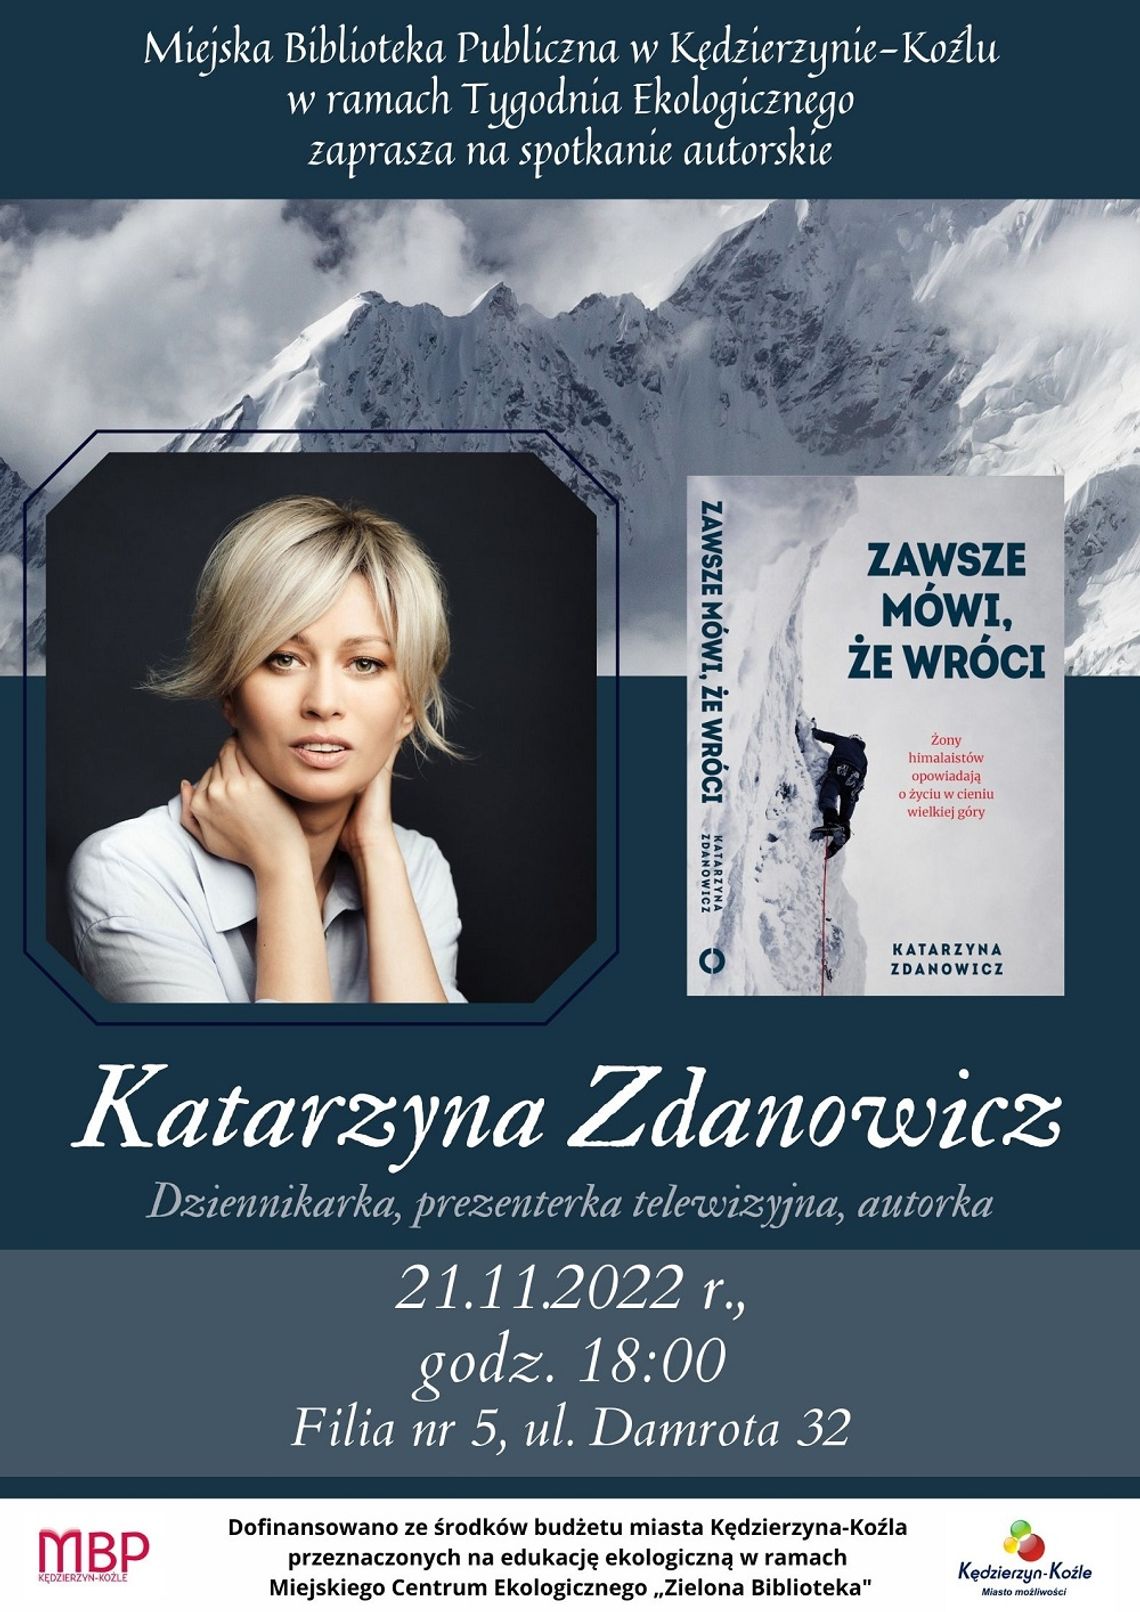 Spotkanie z dziennikarką Katarzyną Zdanowicz w miejskiej bibliotece